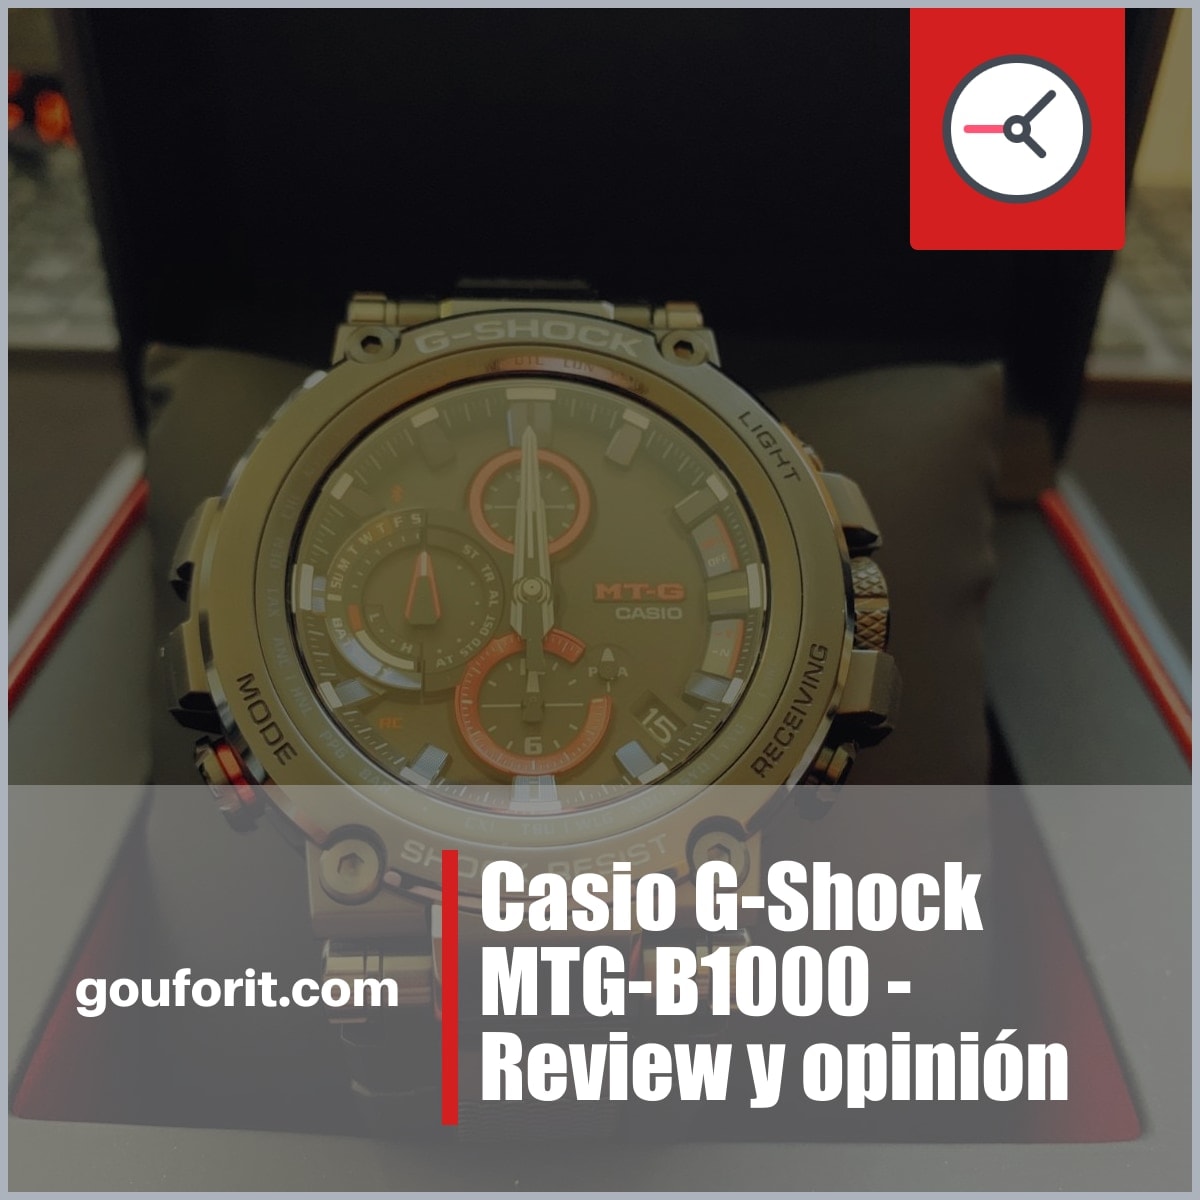 Casio G-Shock MTG-B1000 - Review y opinión